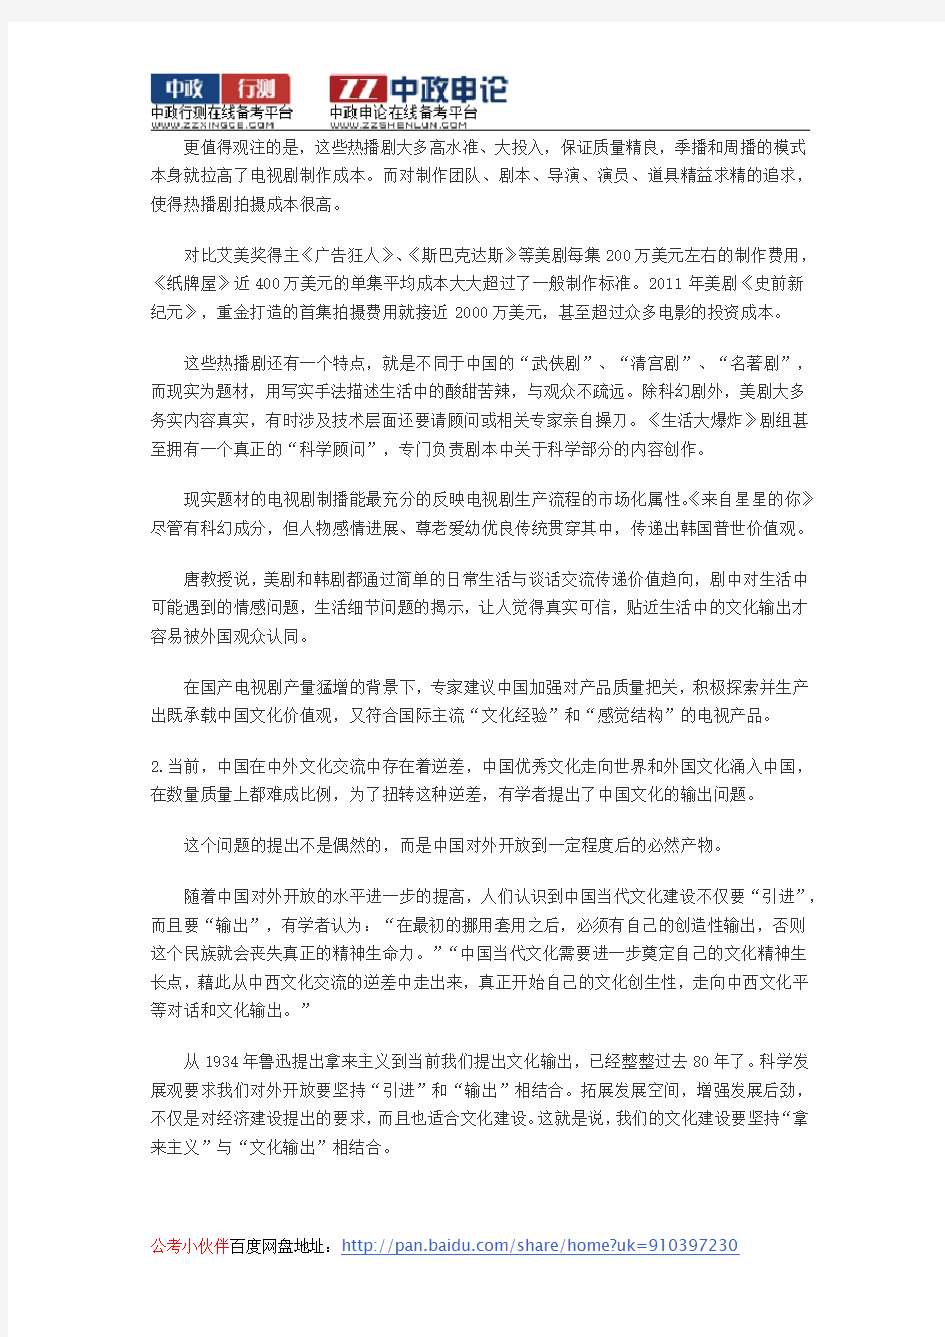 2014年辽宁省公务员考试申论真题及答案解析